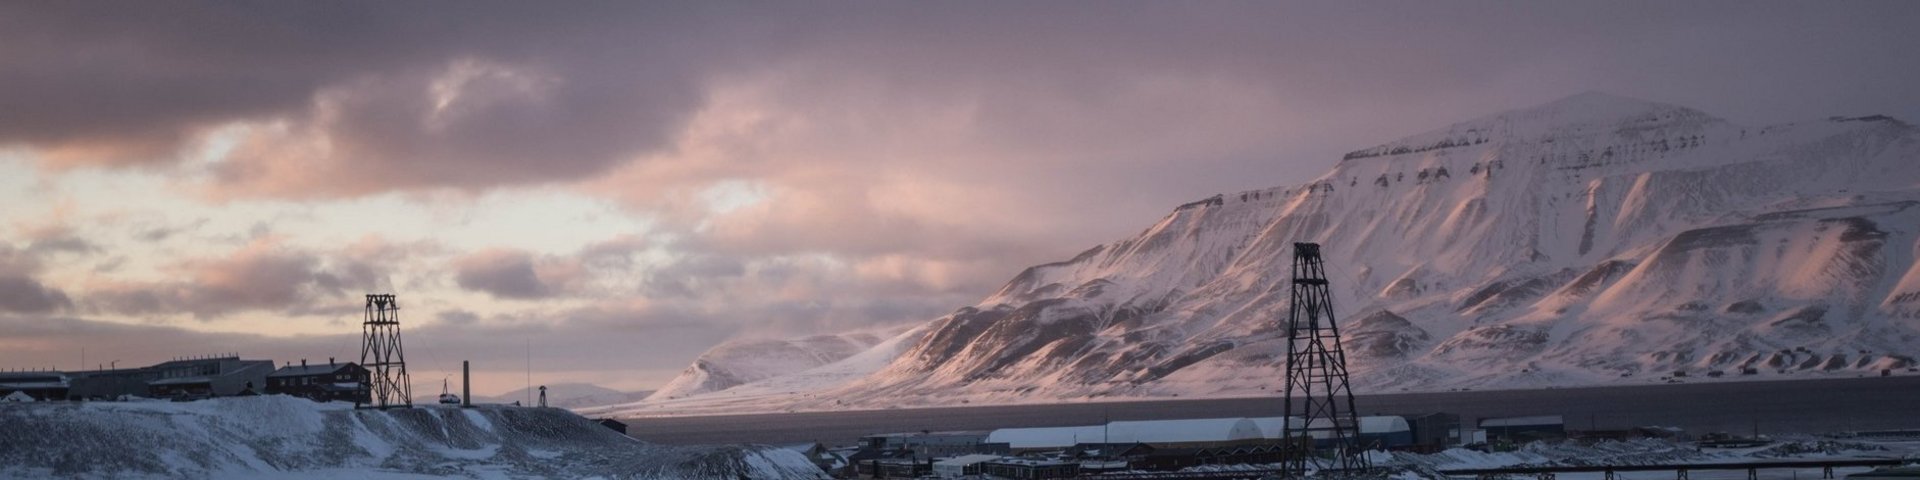 Sonnenuntergang bei Longyearbyen